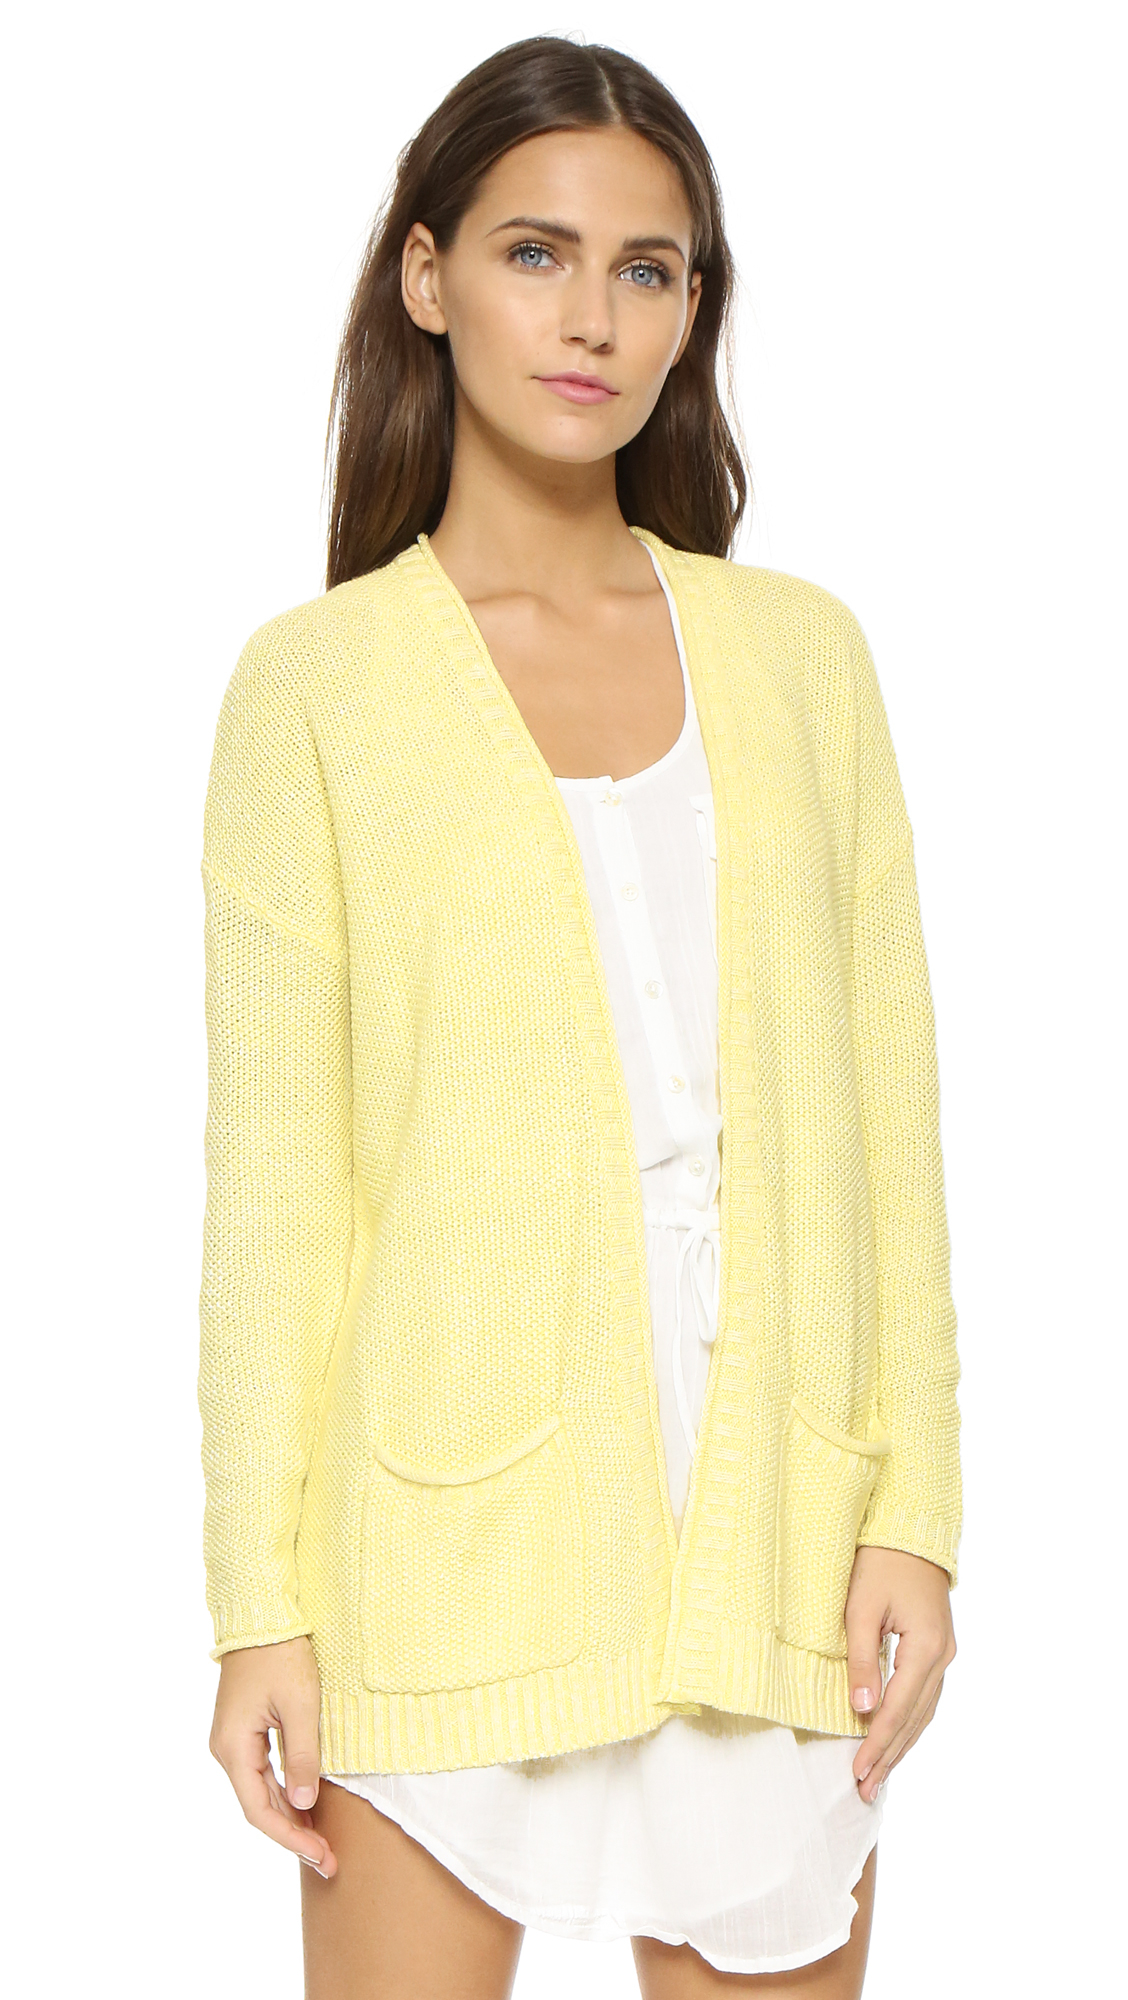 Pale yellow cardigan sweater women fashion for women